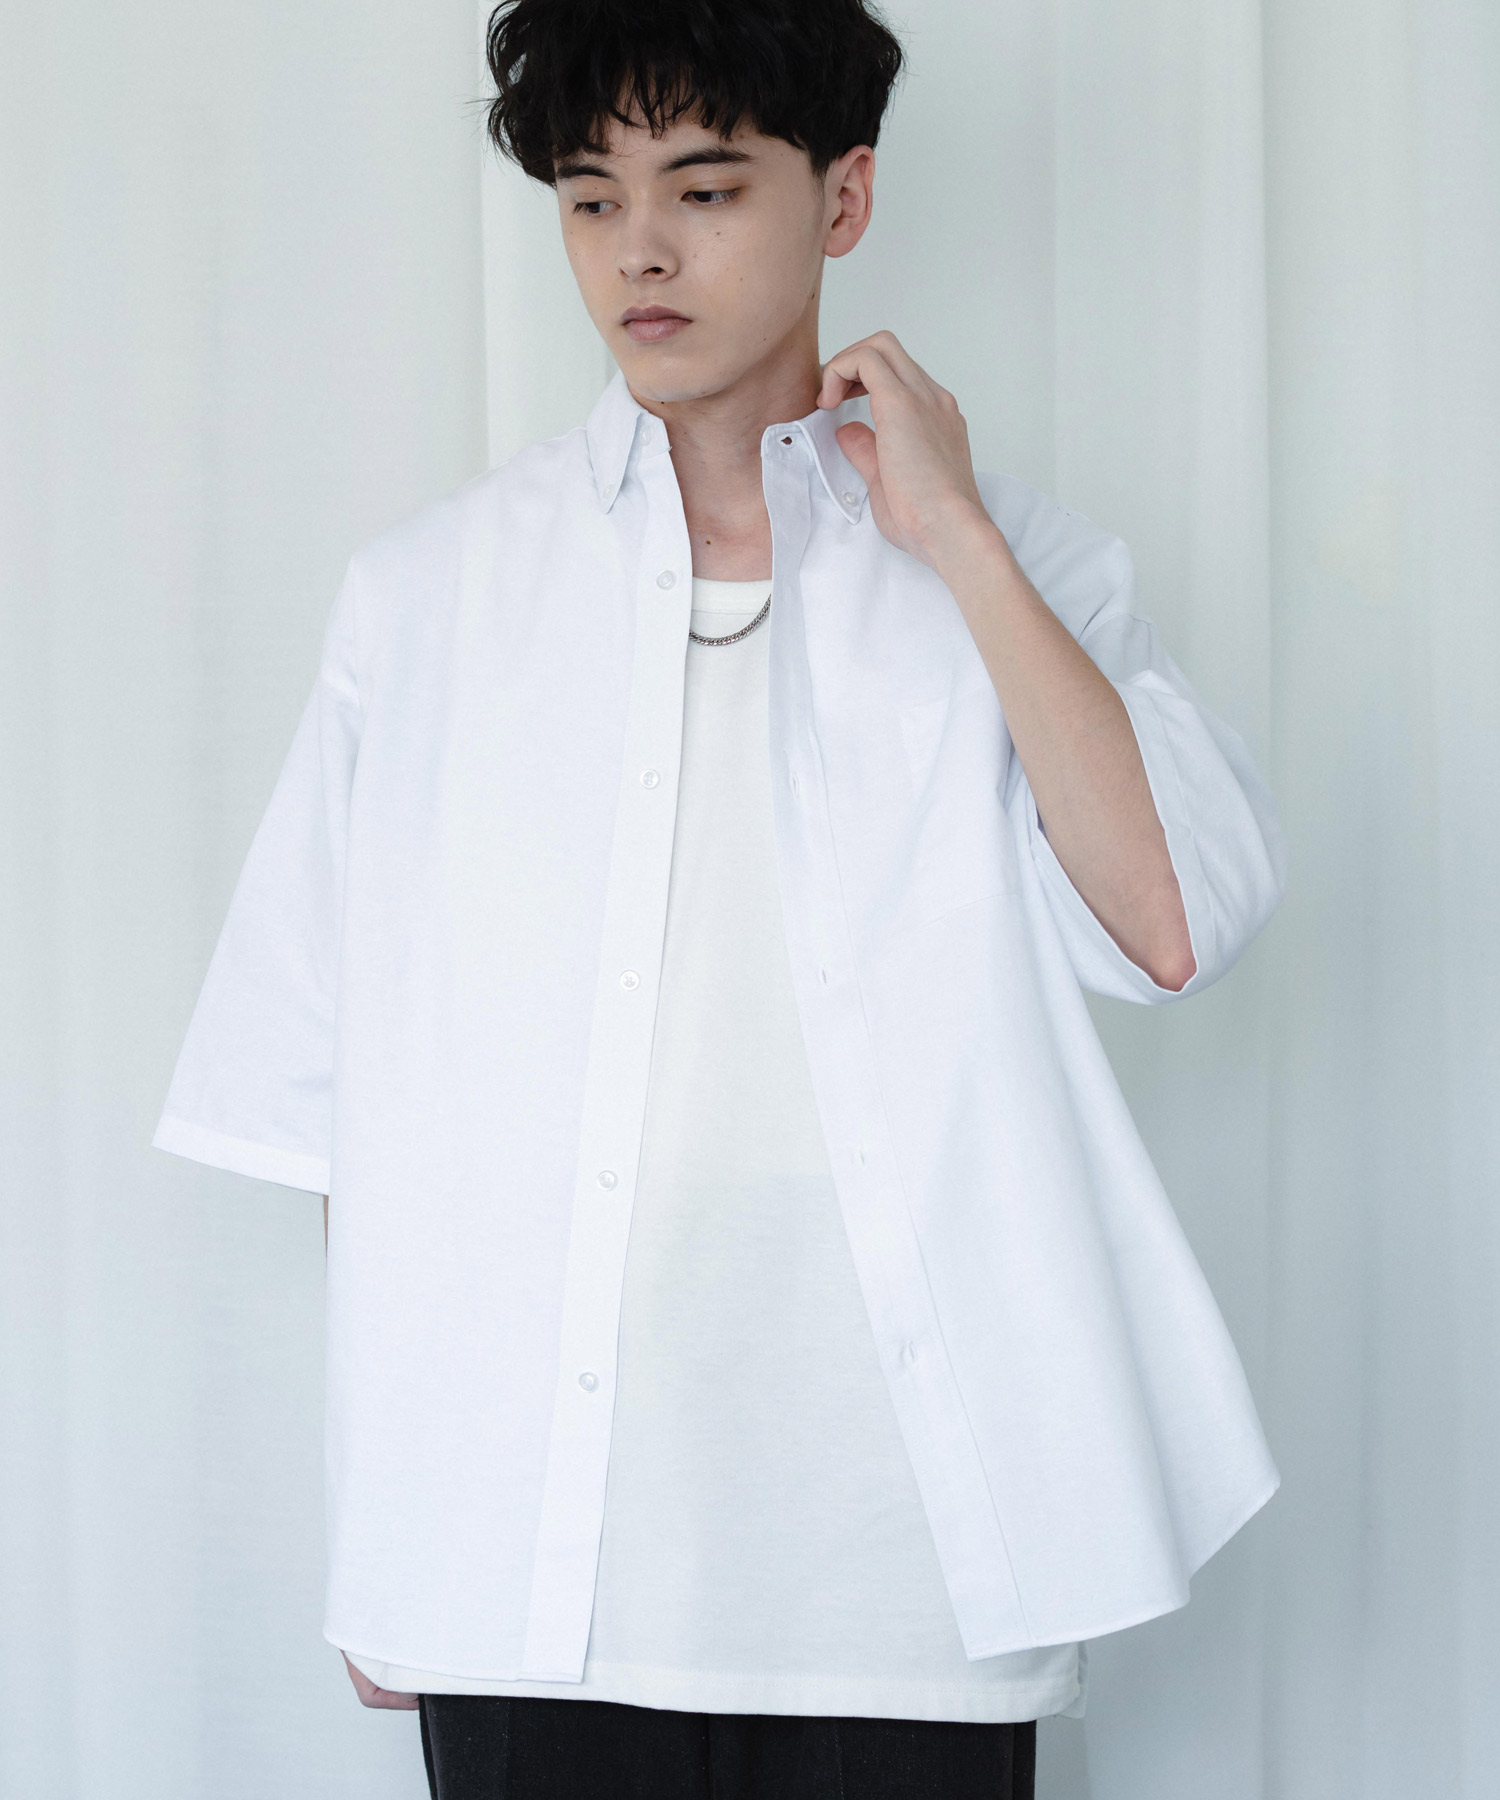 メンズ 日本製 長袖 秋物 綿シャツ ゆったりシルエット LLサイズ 1m1